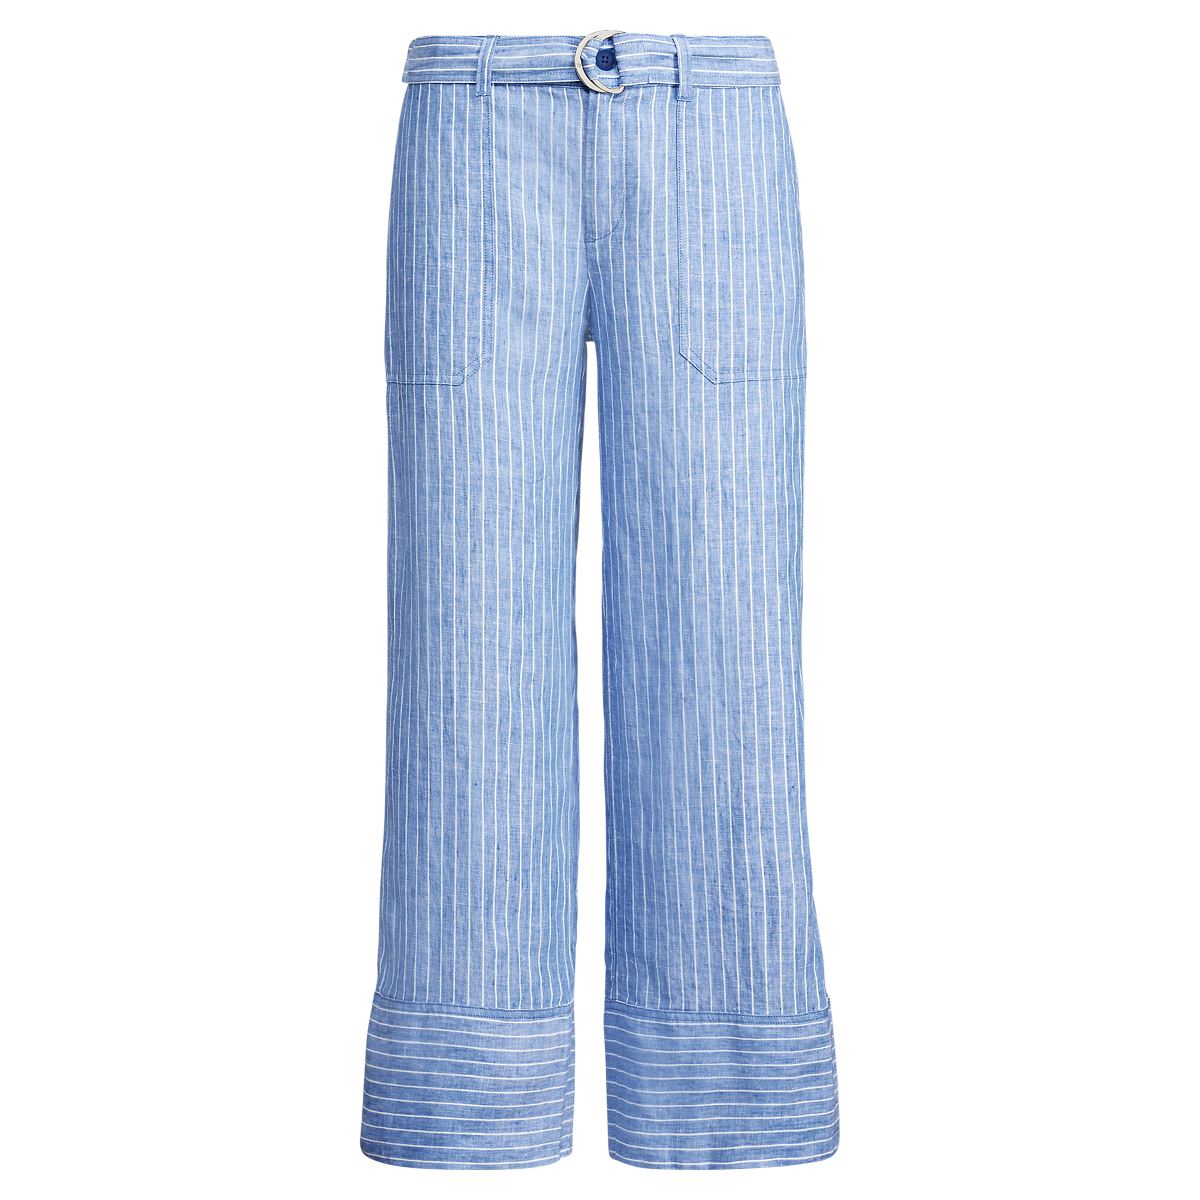 Striped Wide Leg Linen Pants With Self Belt in Light Blue Multi